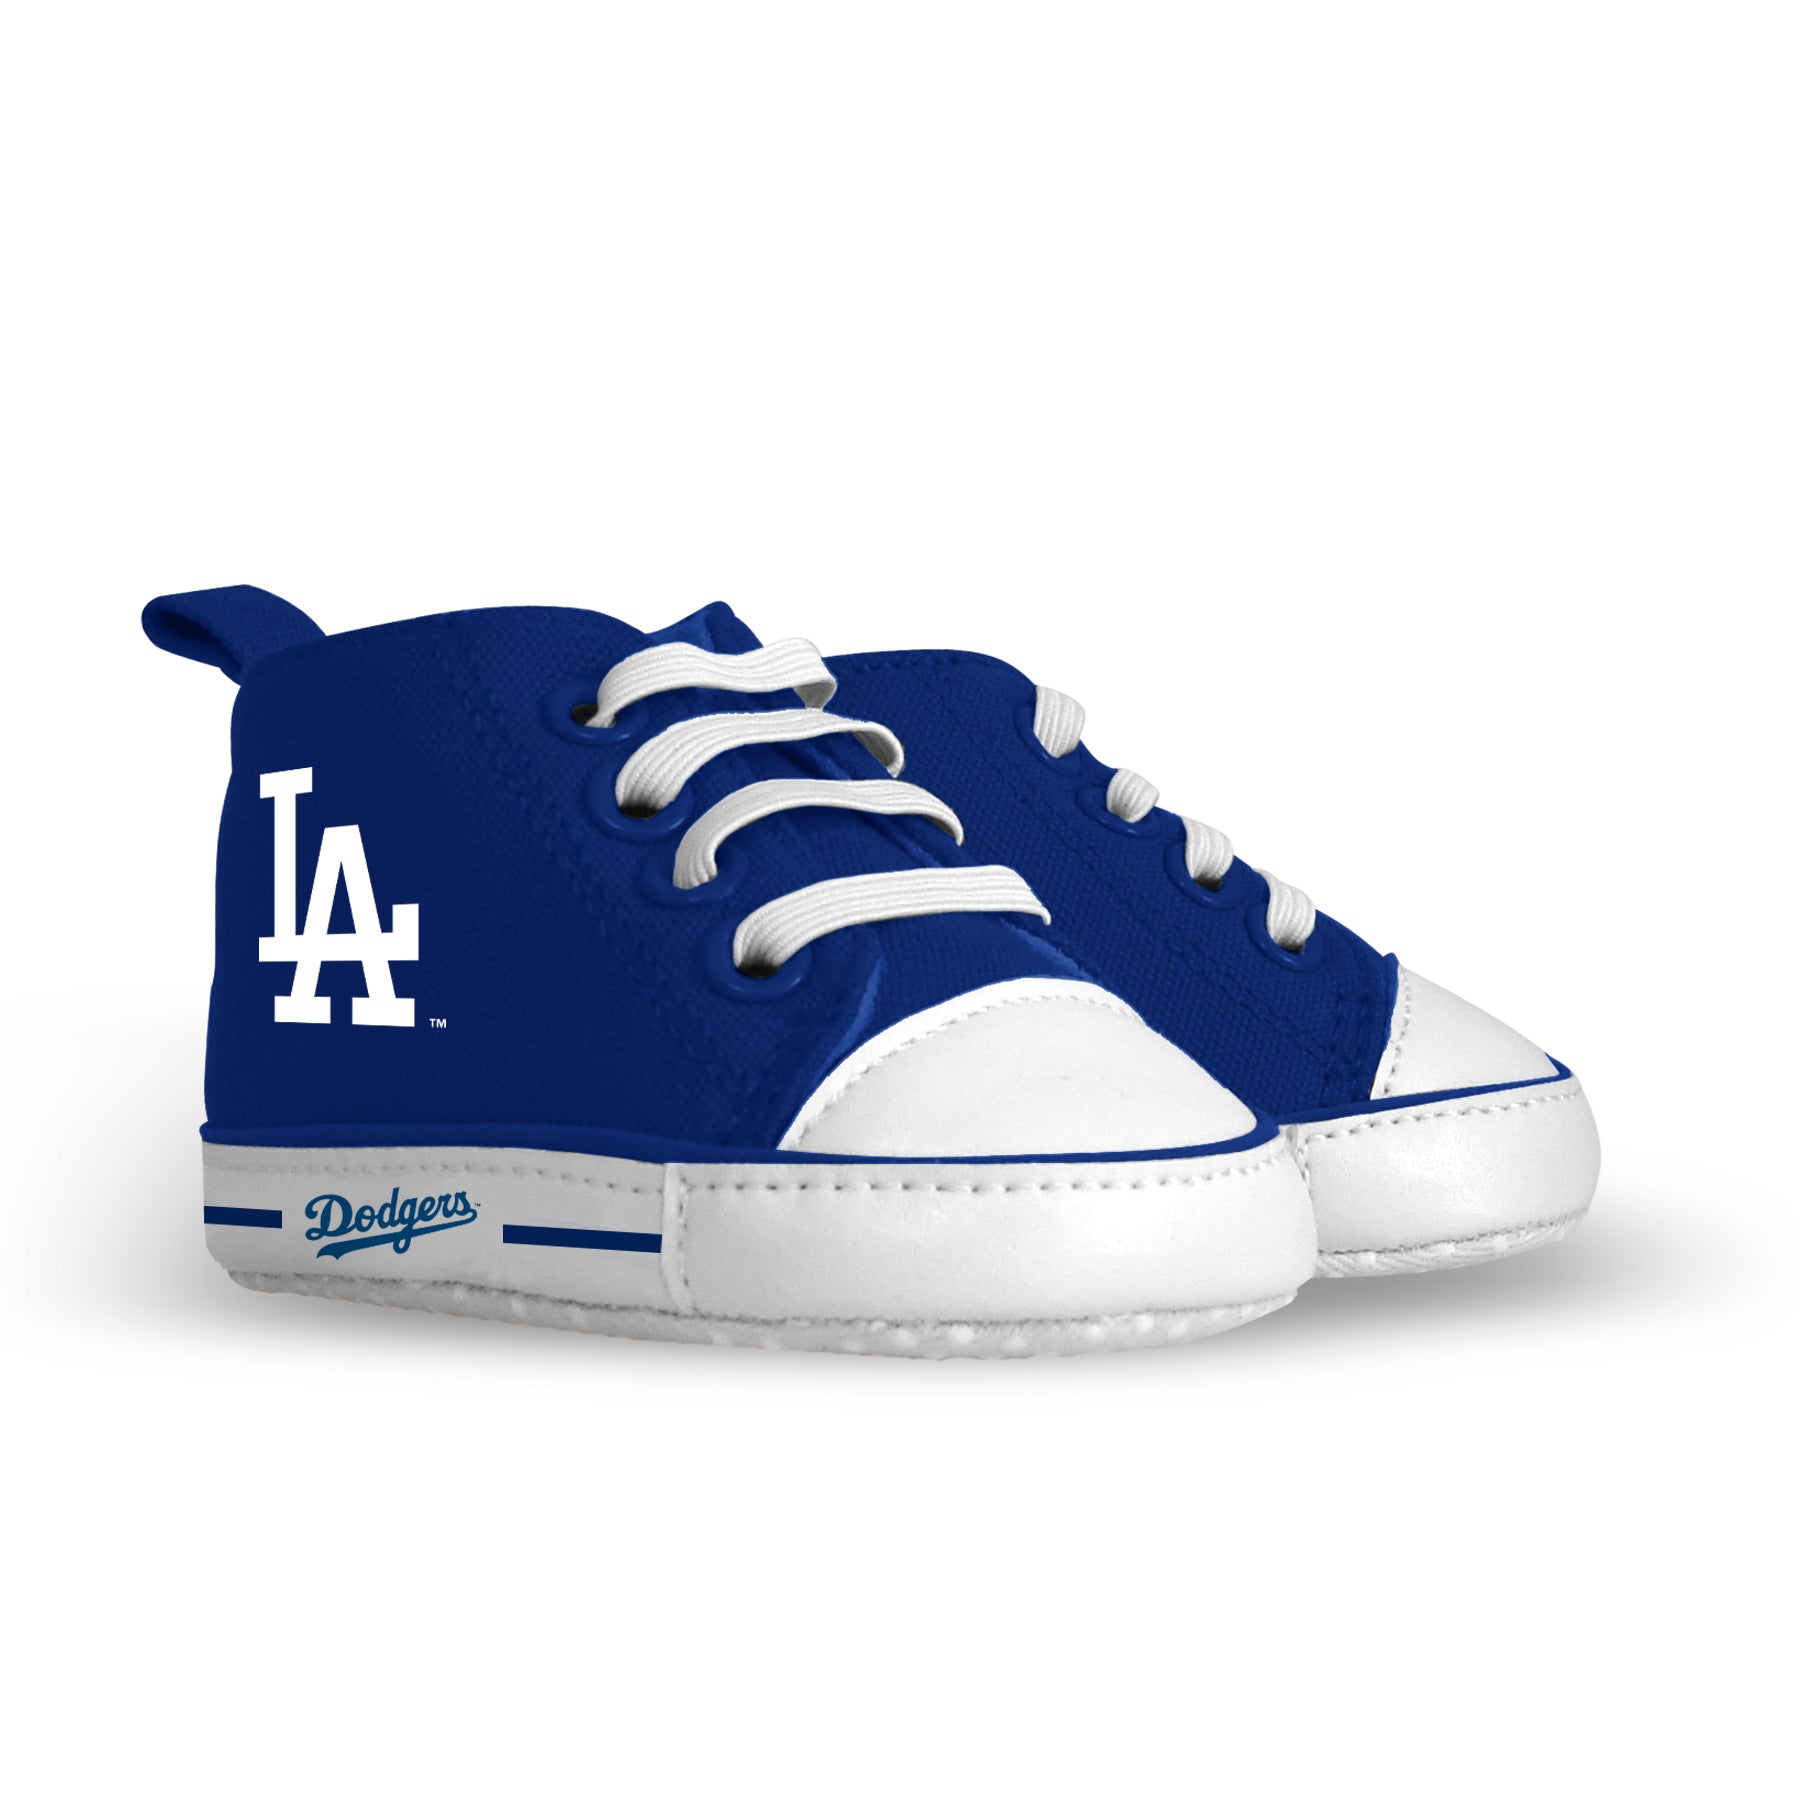 Los Angeles Dodgers Pre-Walkers